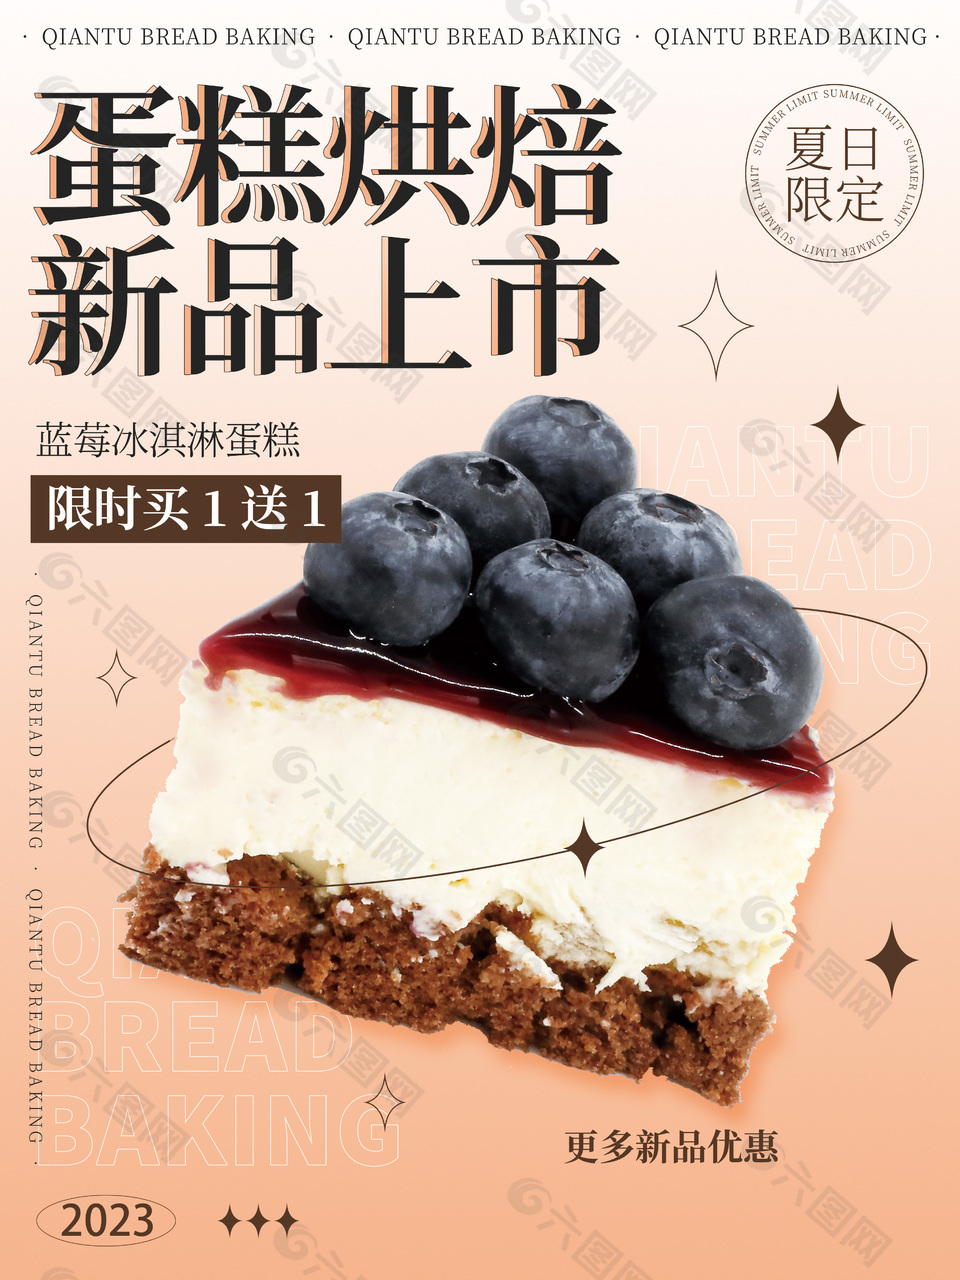 夏日限定蓝莓冰淇淋蛋糕限时买一送一海报